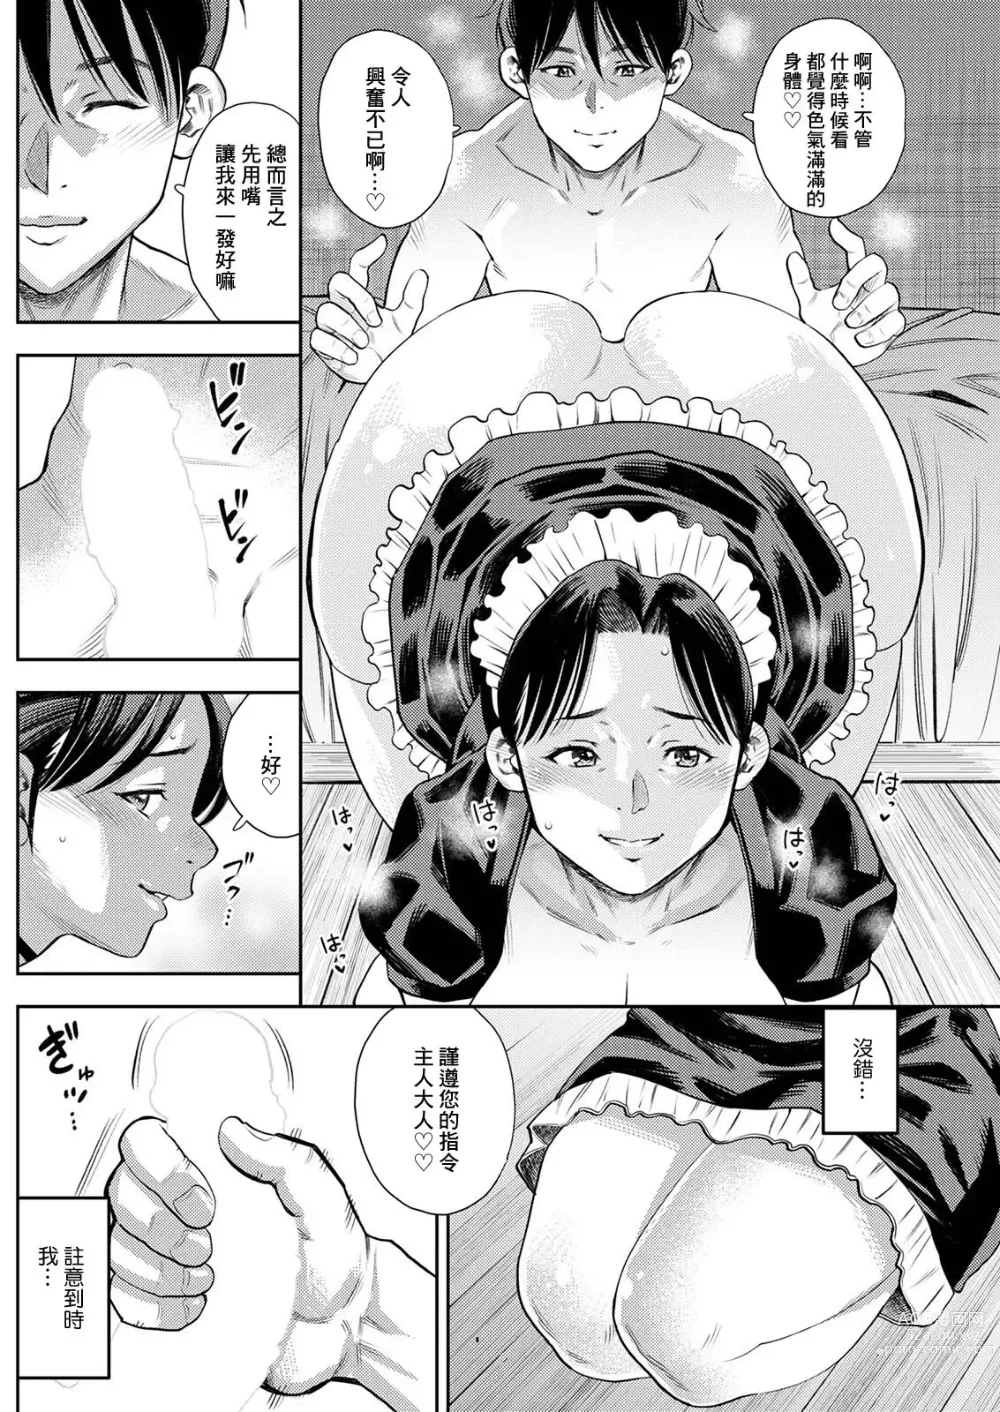 Page 4 of manga Michiyo-san no Hiasobi Kouhen